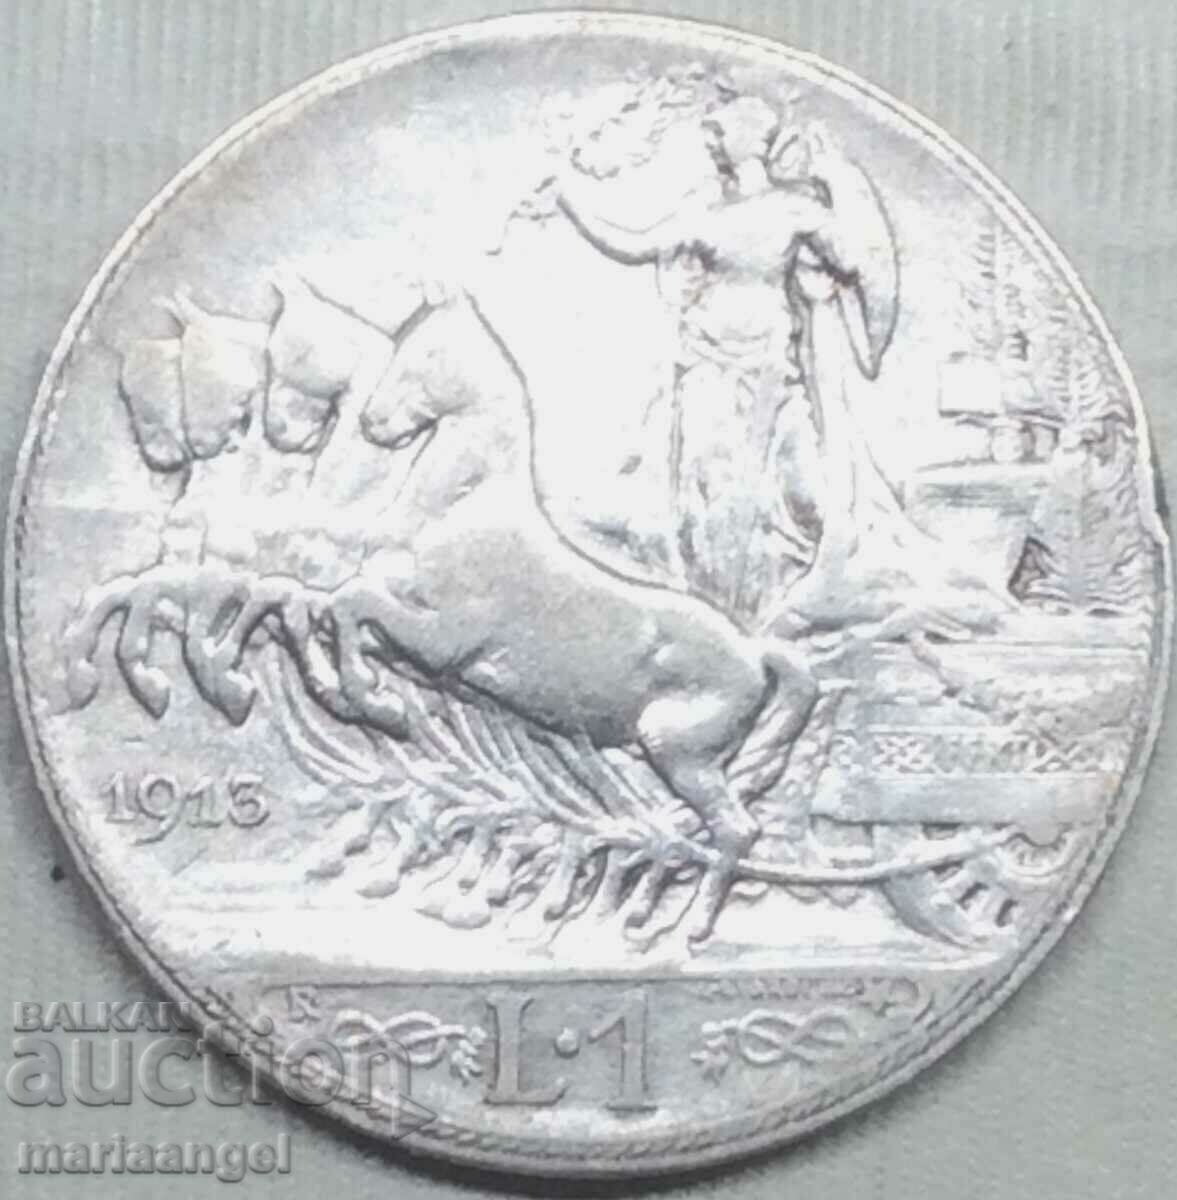 1 lira 1913 Italy silver